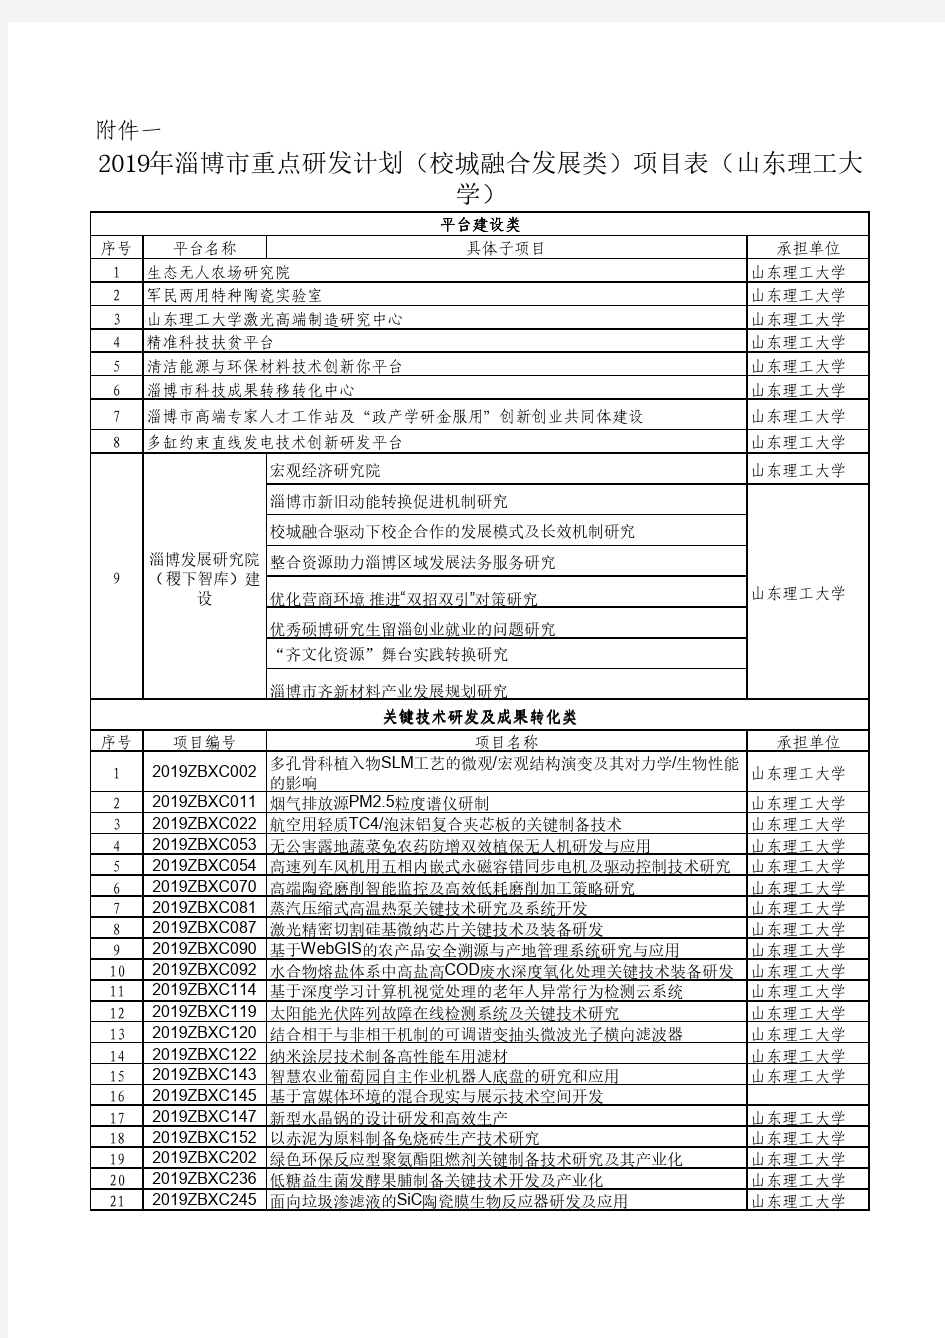 2019年淄博市重点研发计划(校城融合发展类)项目表